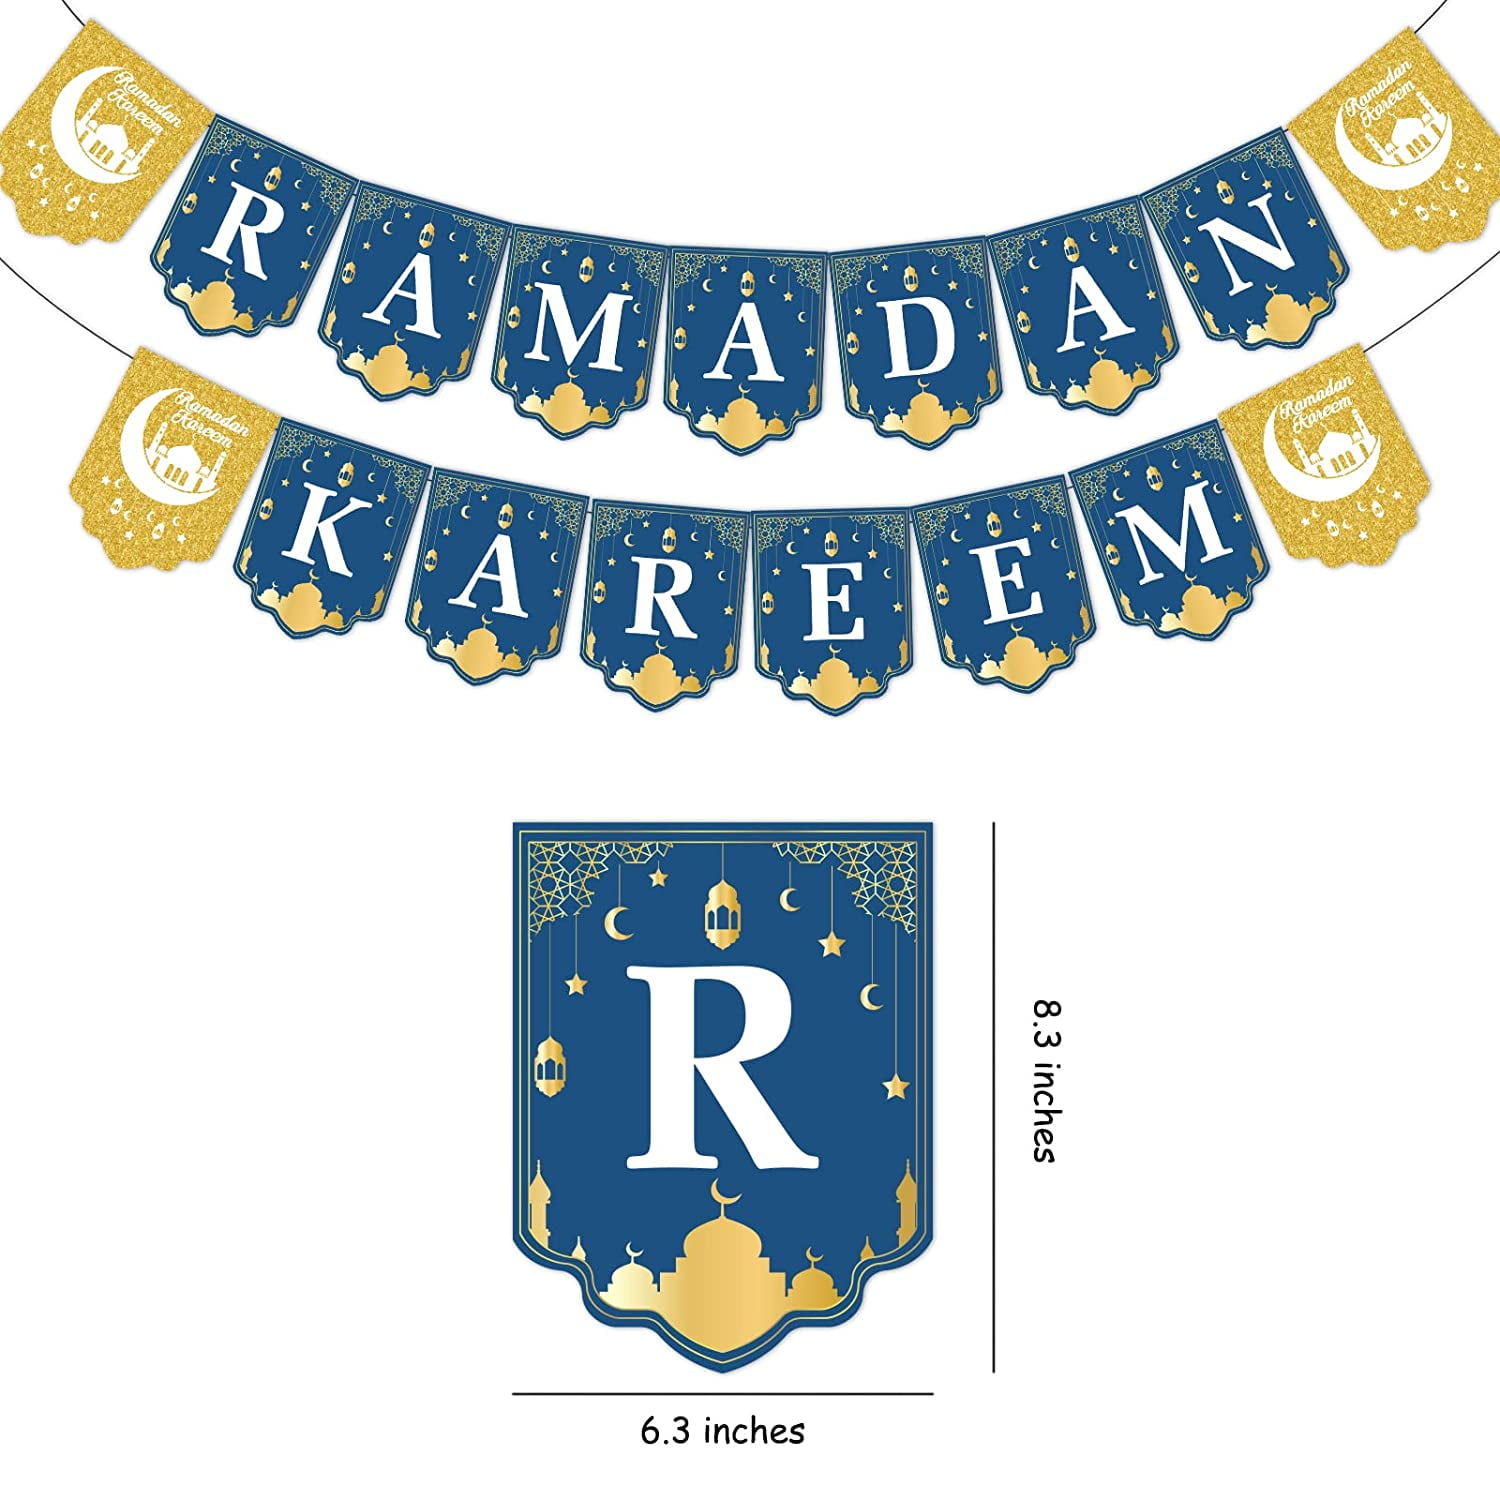 Schuldenaar Laatste schrijven Ramadan Kareem Decorations, Eid Party Decorations with Ramadan Kareem  Banner, Eid Mubarak Balloons, Star Moon Foil Balloon Star Streamers for  Ramadan Home Decoration - Walmart.com